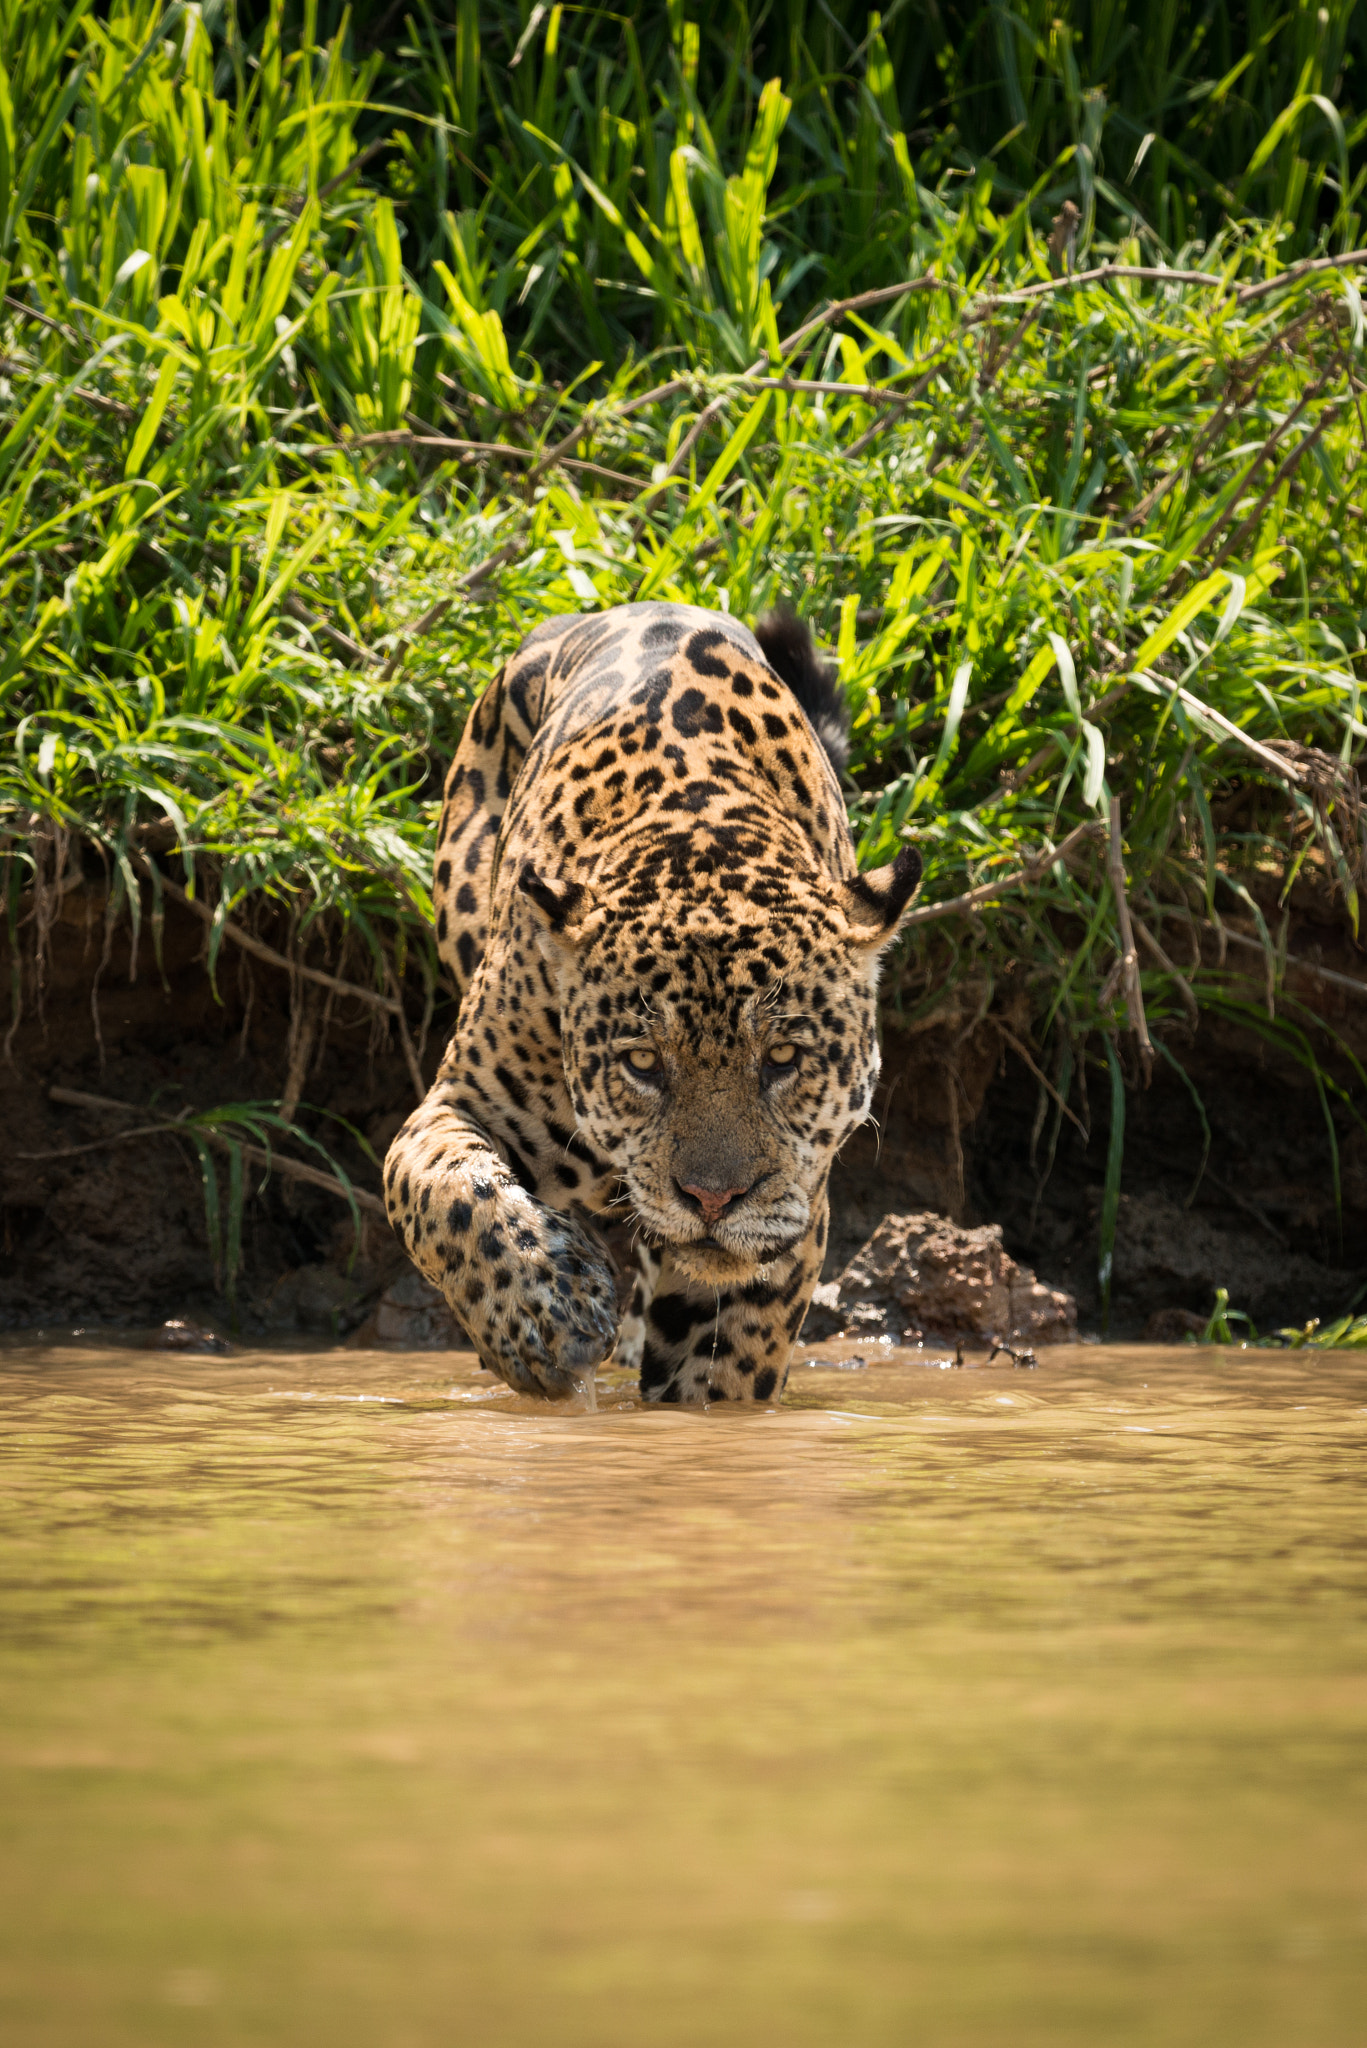 Nikon D800 sample photo. Jaguar walking through muddy shallows towards camera photography